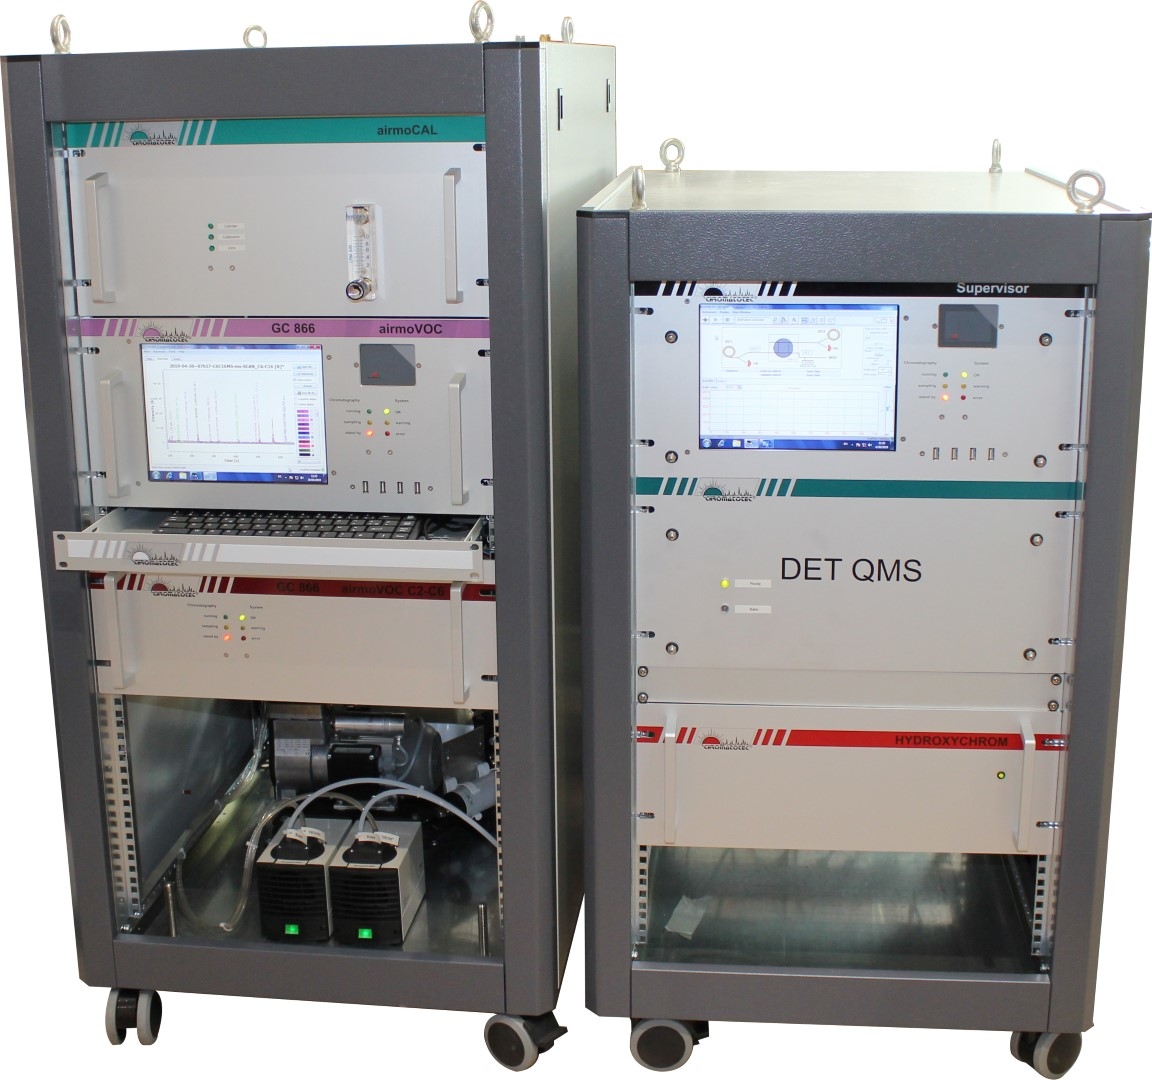 Visuel de DET QMS - Spectromètre de masse Analyse de gaz en ligne rapide, précise et sensible